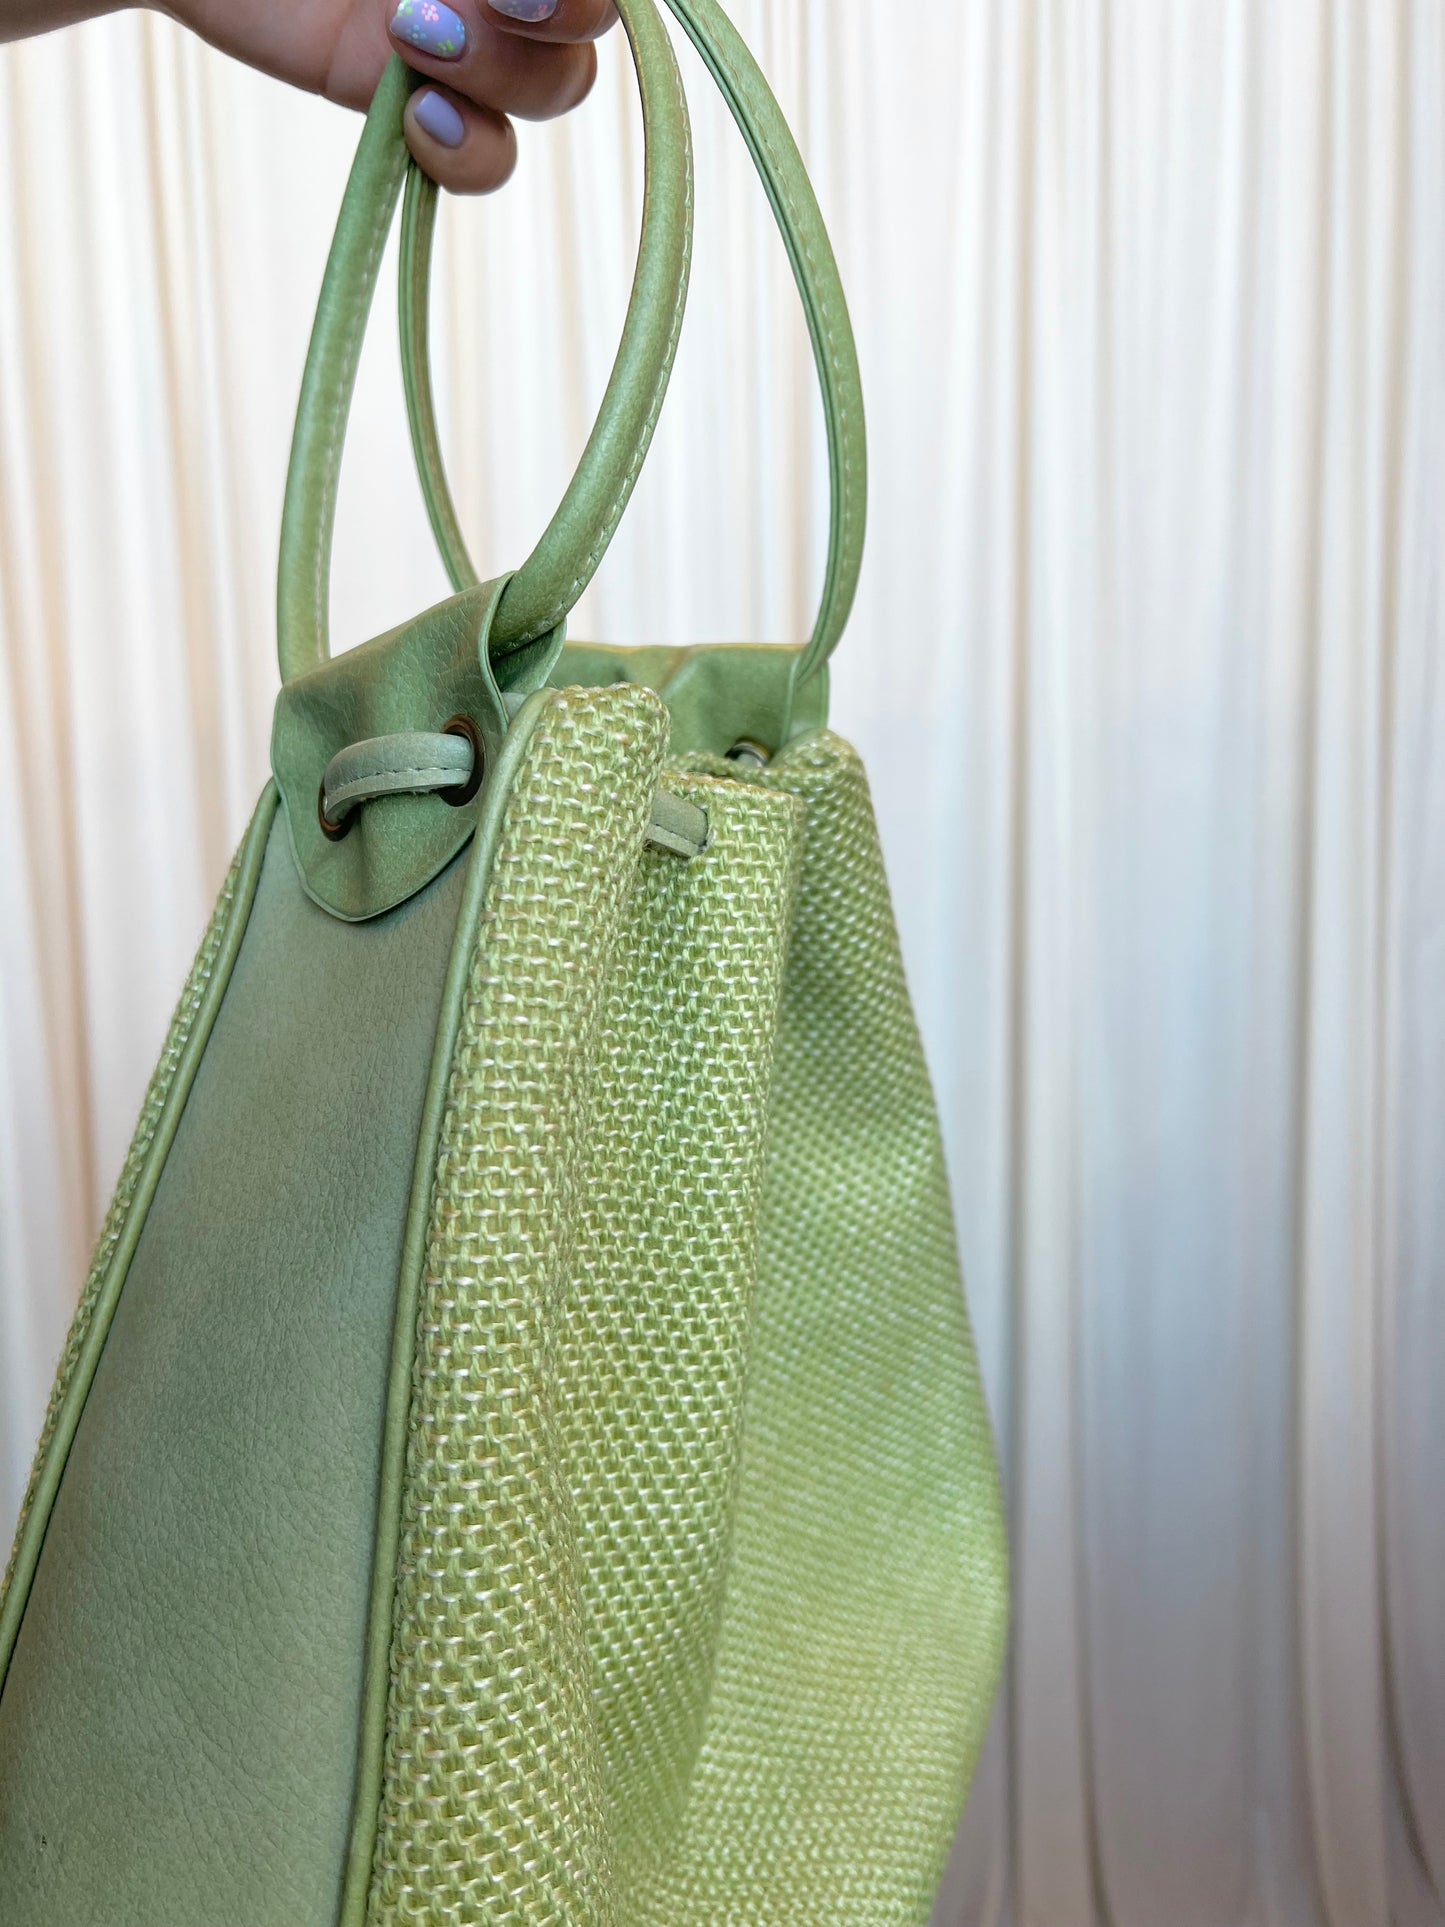 Vintage Green Handbag